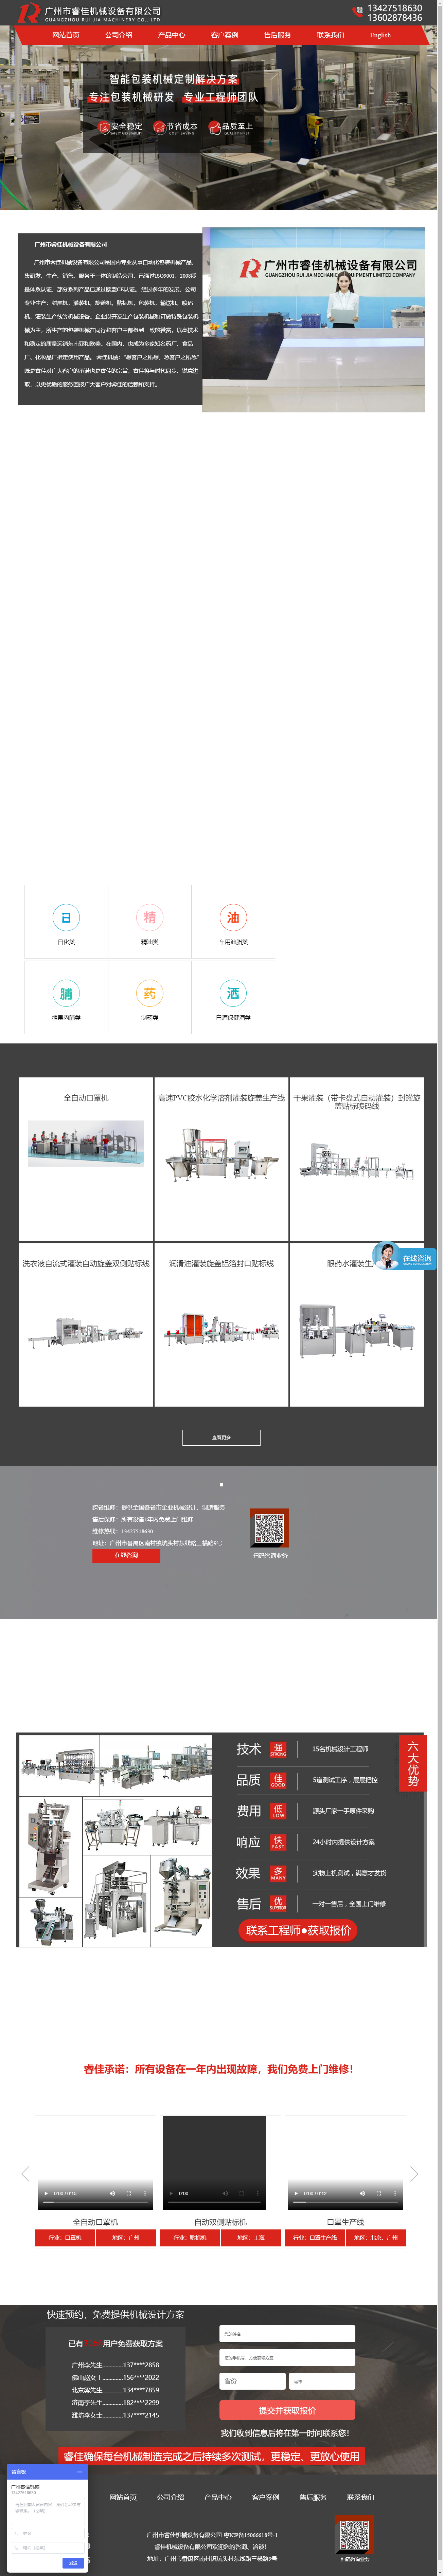 广州市睿佳机械设备有限公司网站案例